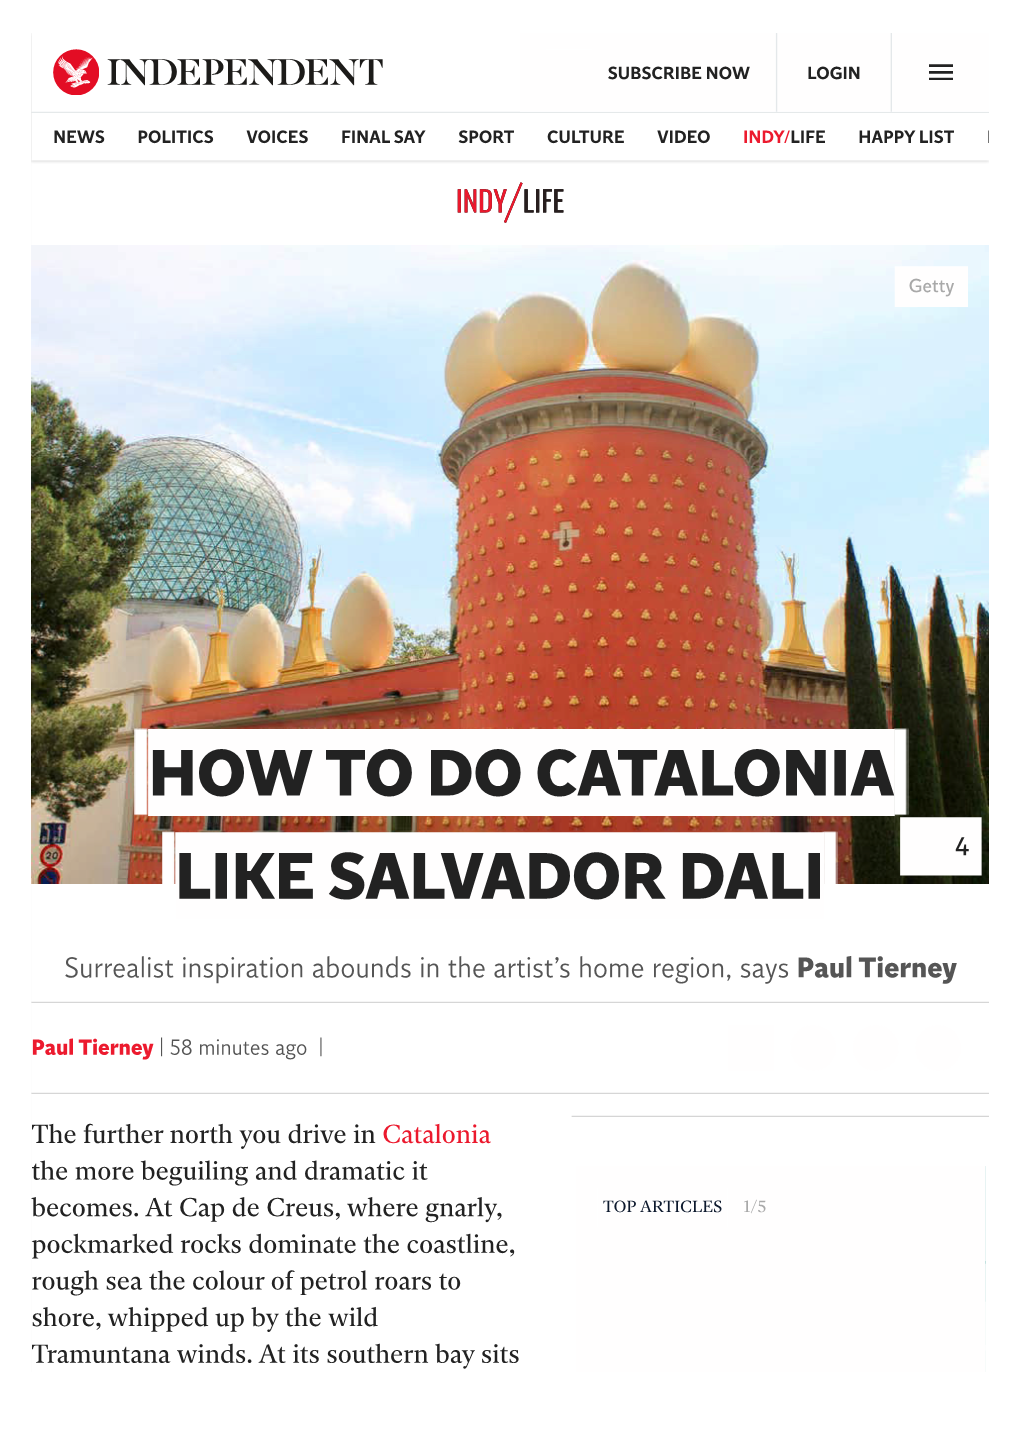 How to Do Catalonia Like Salvador Dali